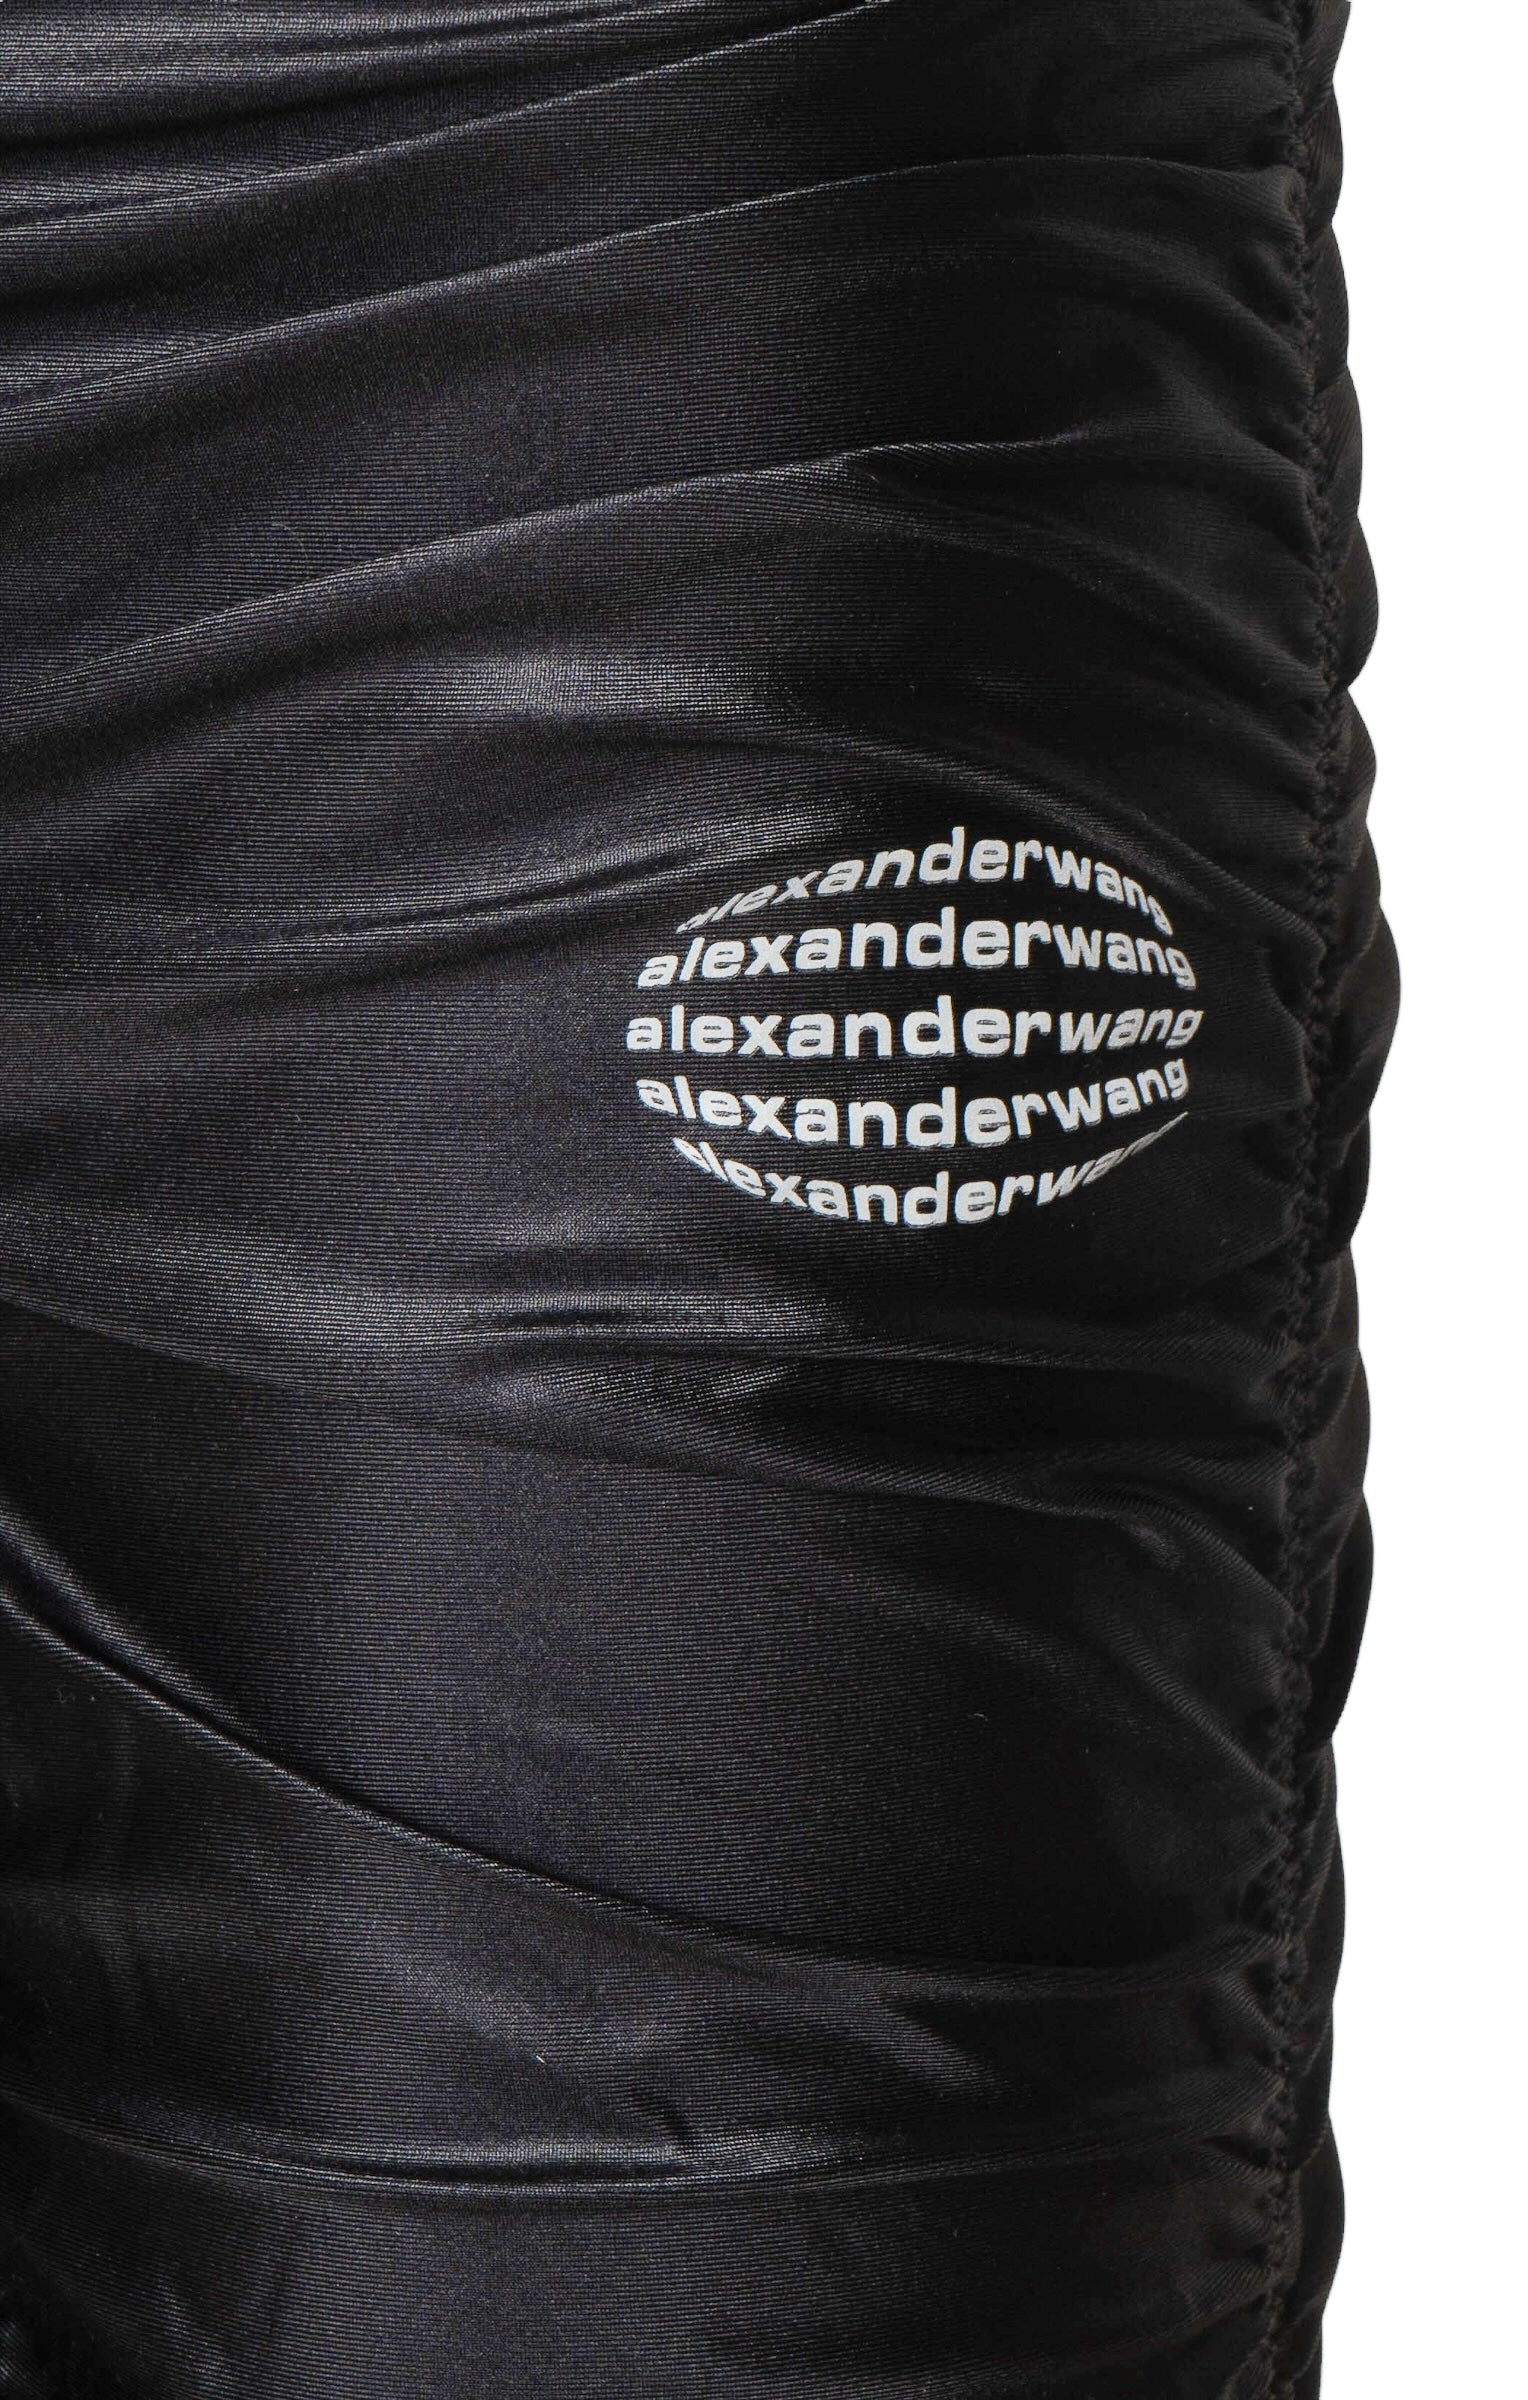 ALEXANDER WANG (RARE) Set Size: Cardigan - No size tags, fits like S Top - No size tags, fits like S Pants - No size tags, fits like M